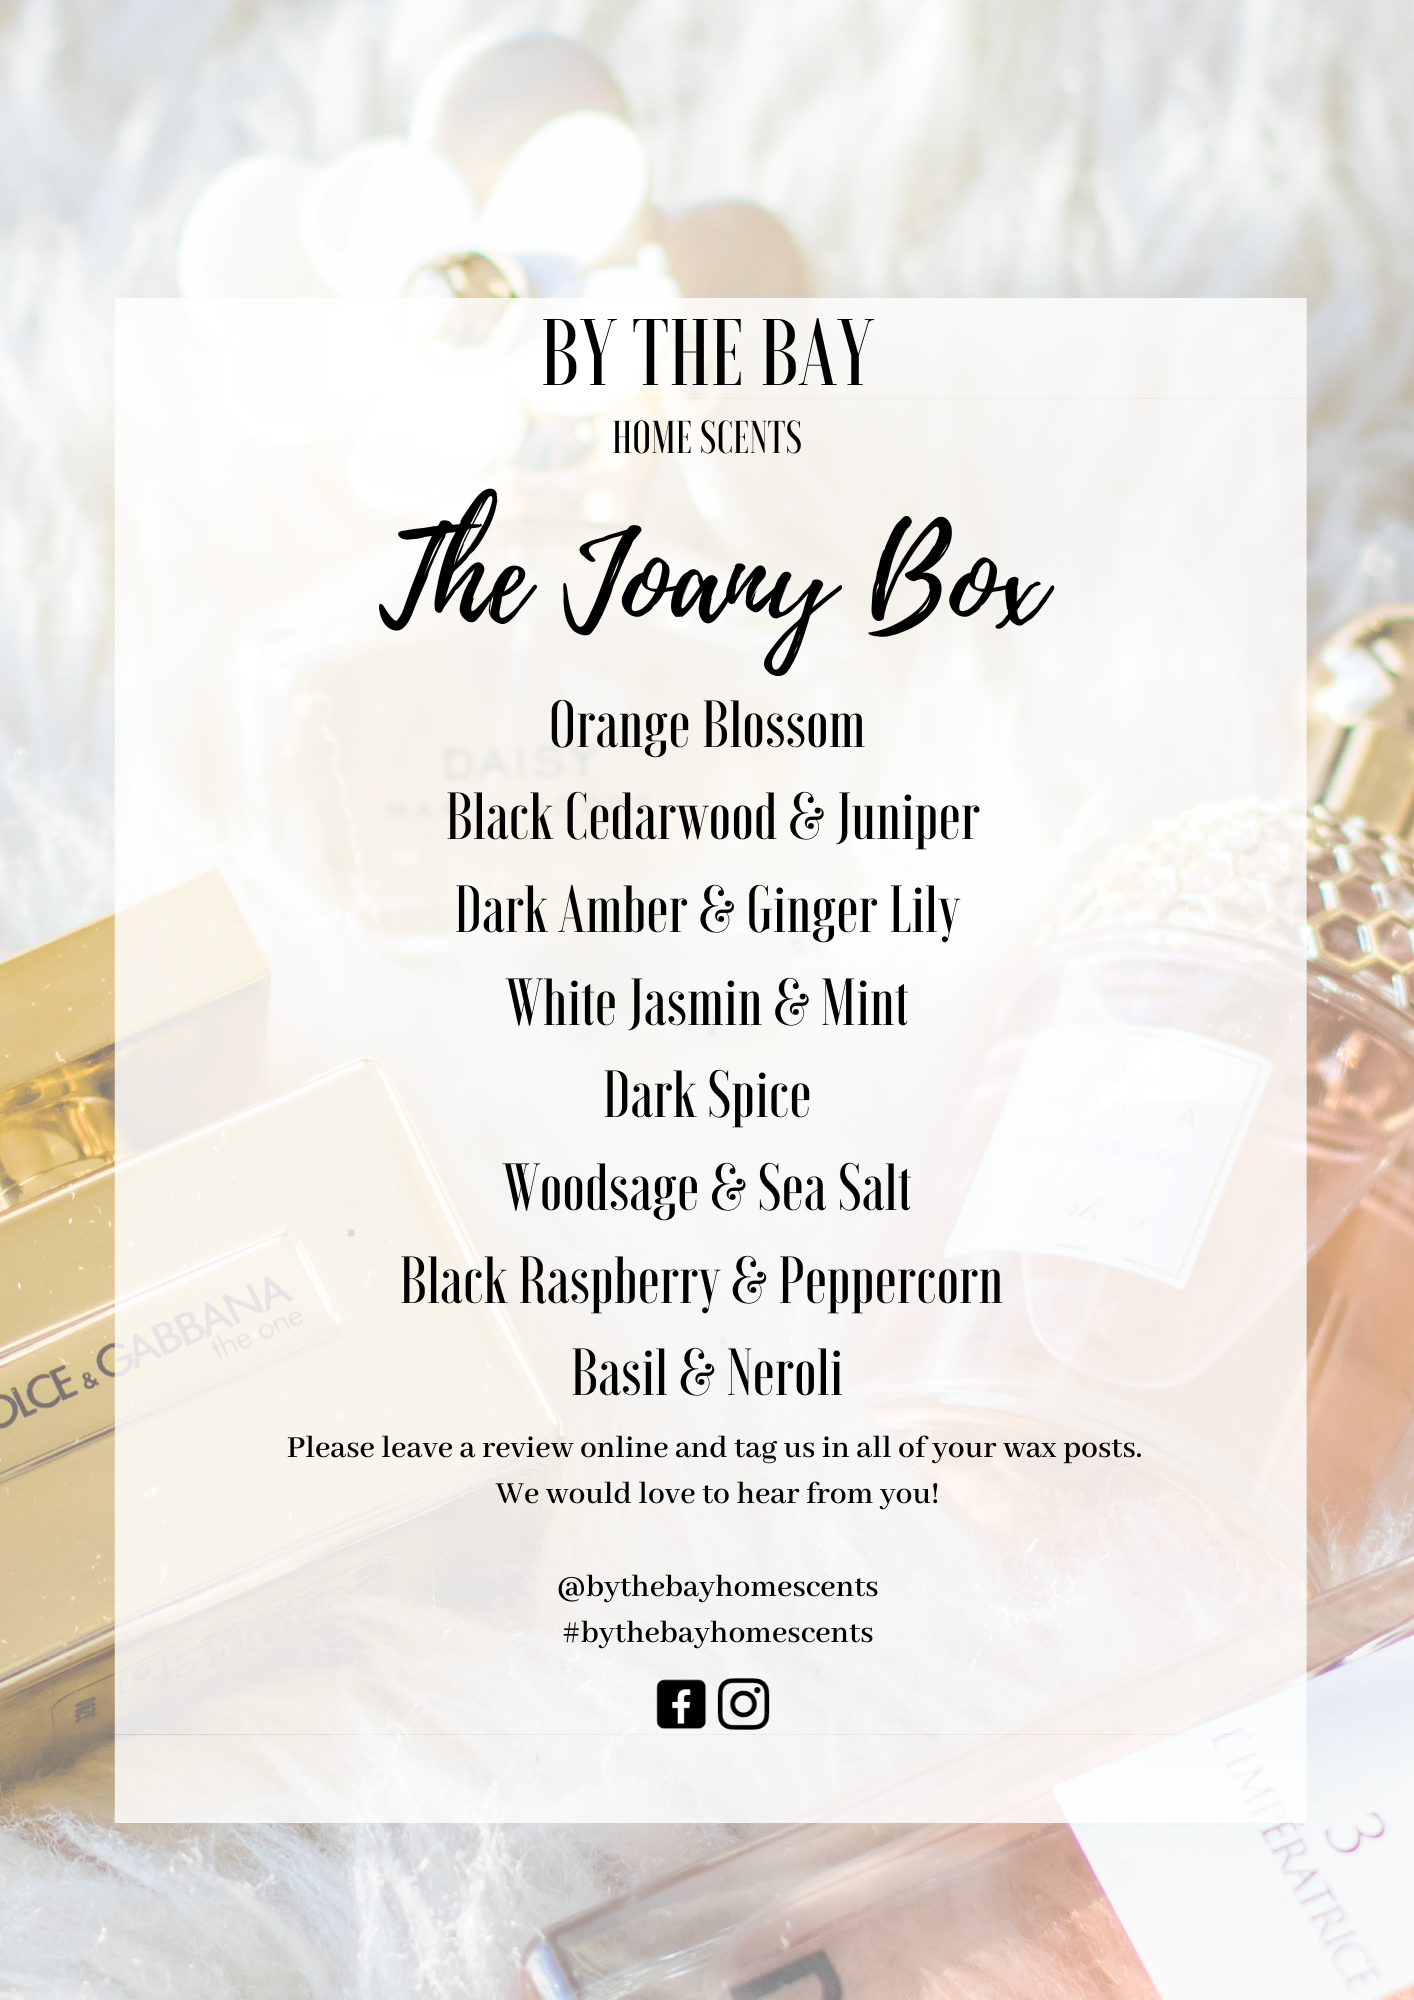 The Joany Box